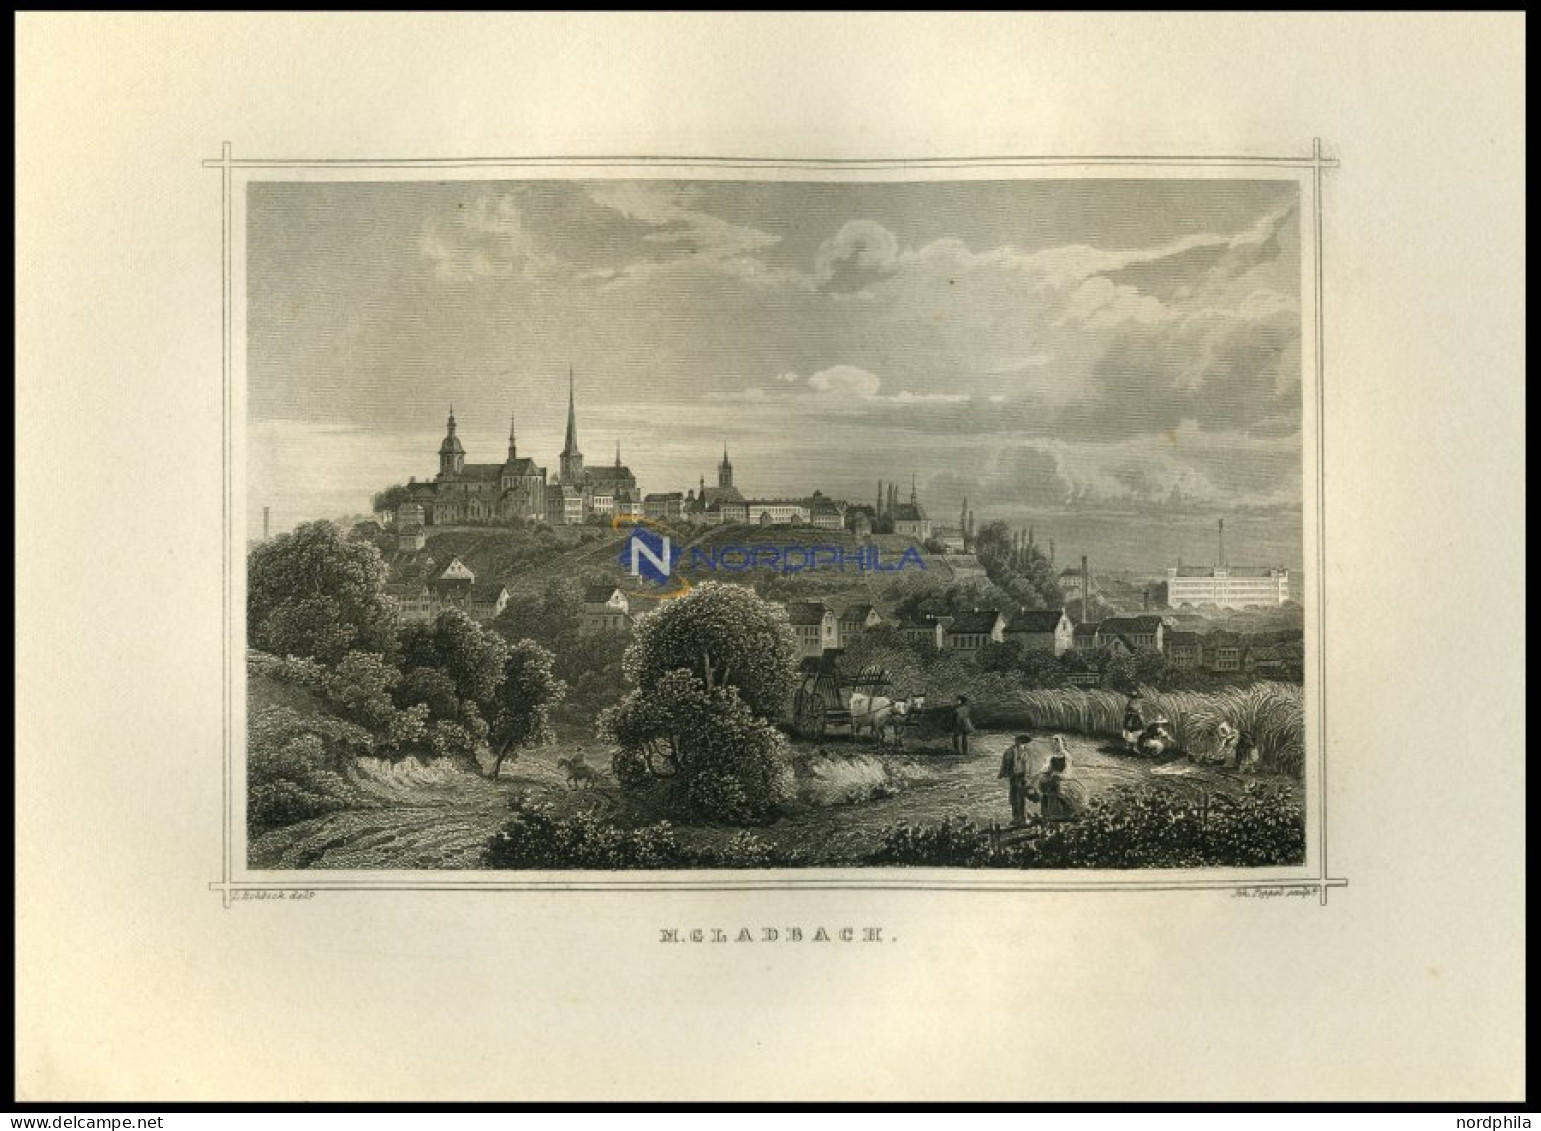 GLADBACH, Gesamtansicht Mit Hübscher Personenstaffage Im Vordergrund, Stahlstich Von Rohbock/Poppel Um 1850 - Prints & Engravings